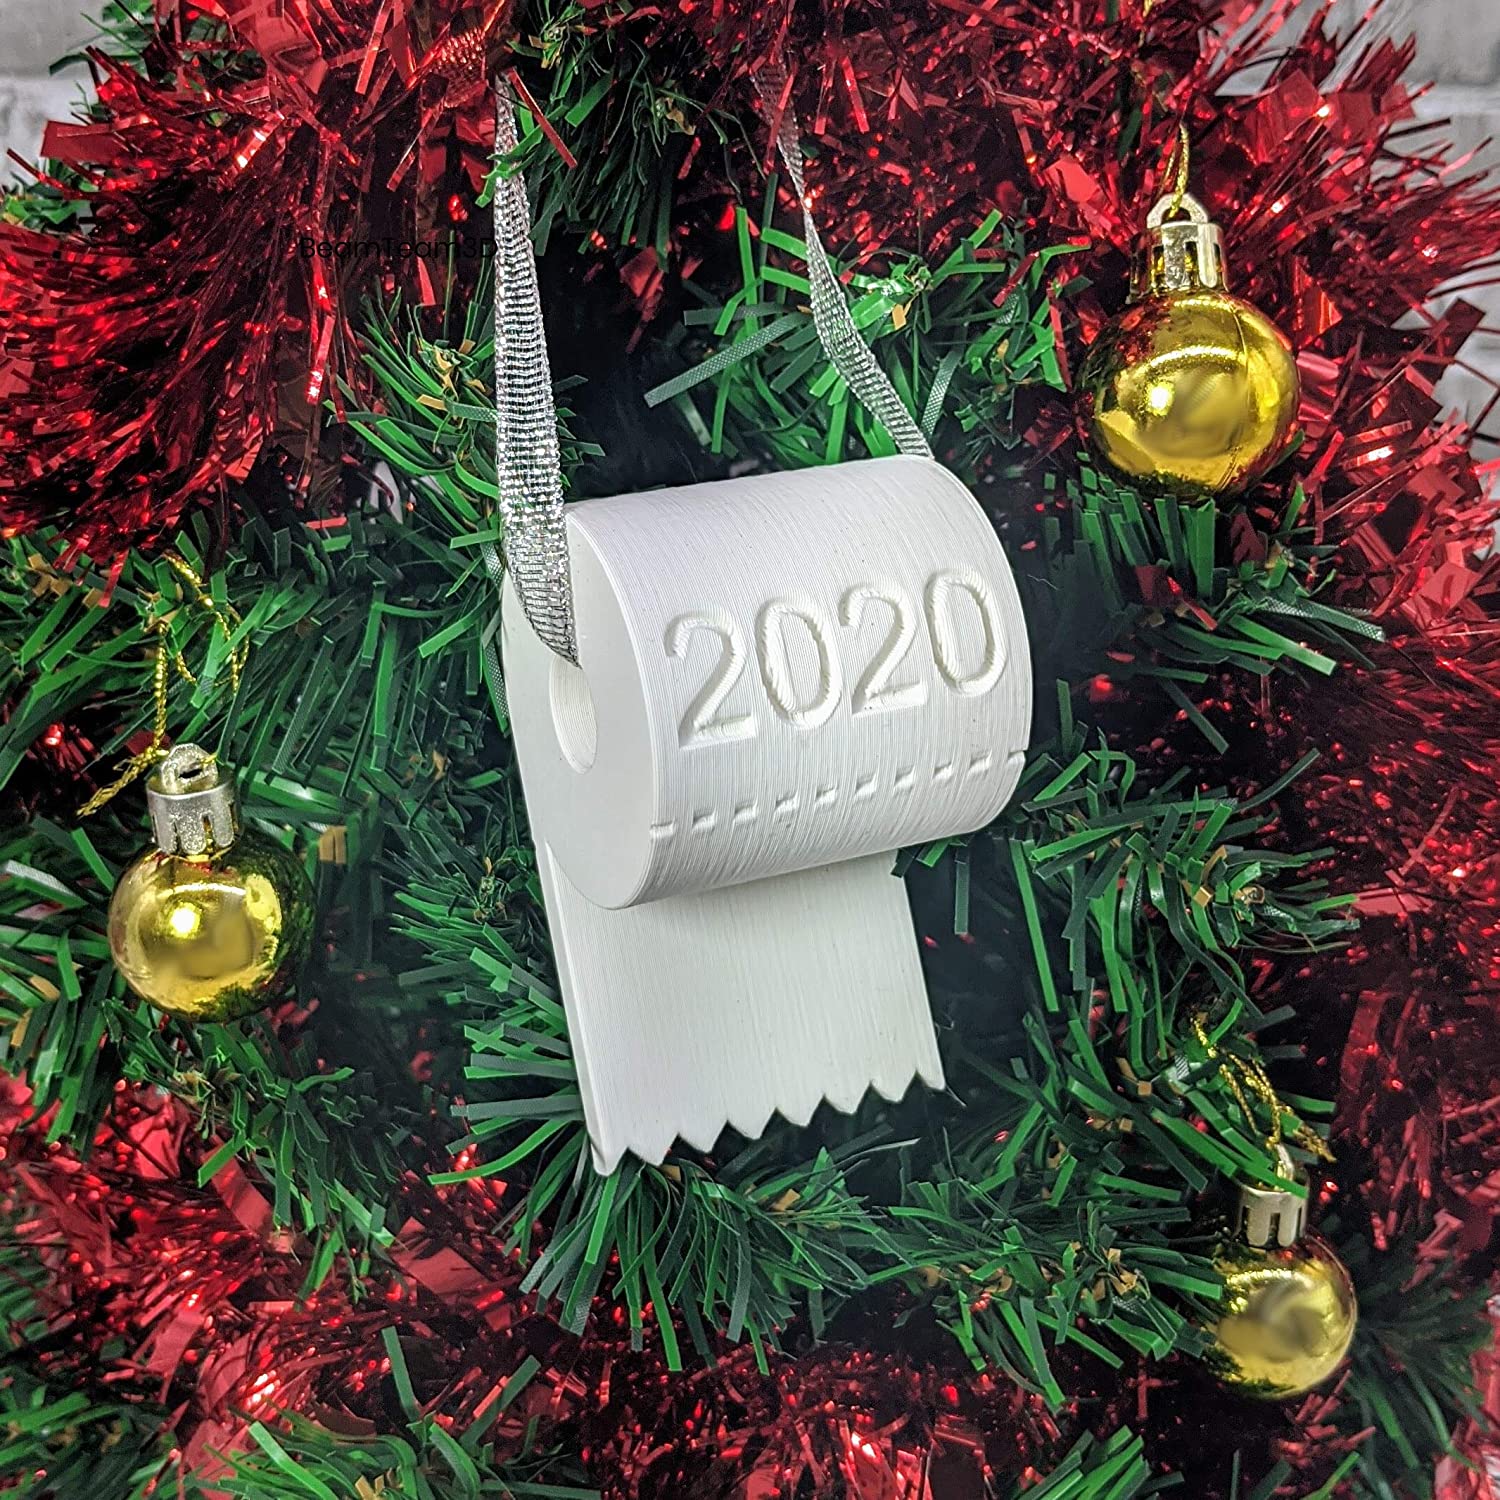 2020 Christmas Ornament Toilet Paper Crisis